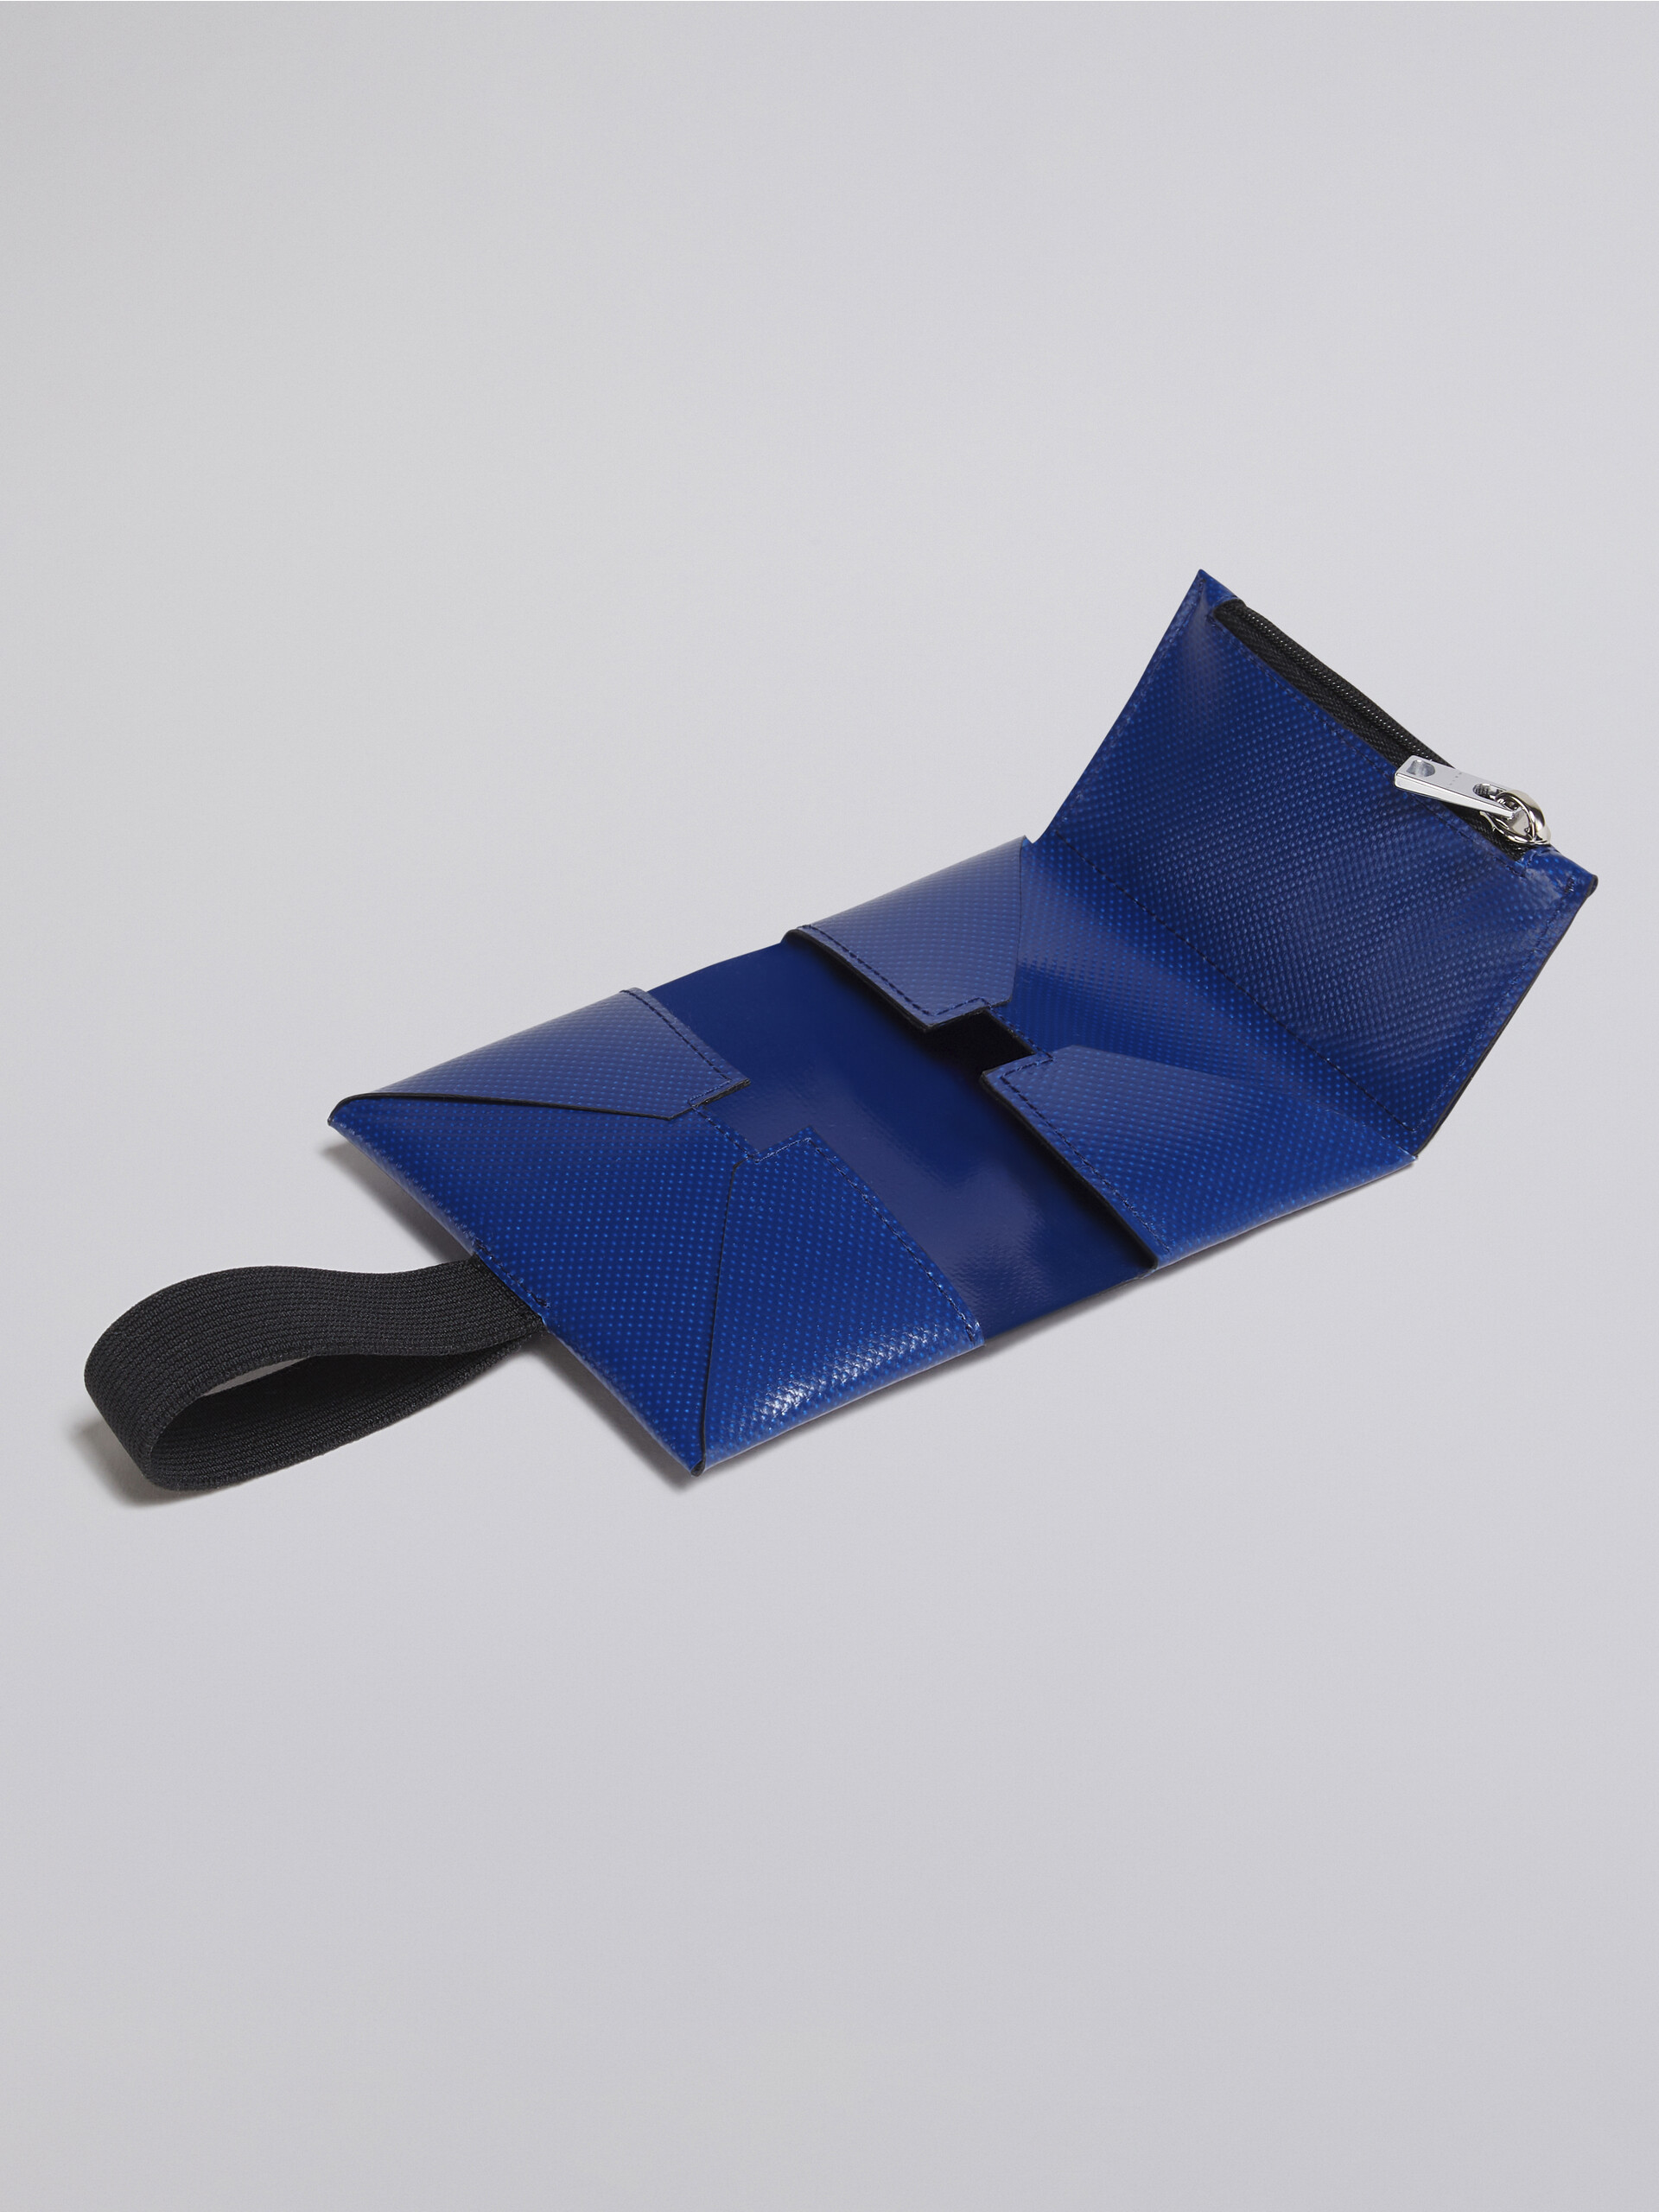 Portafoglio in PVC con costruzione origami blu - Portafogli - Image 5